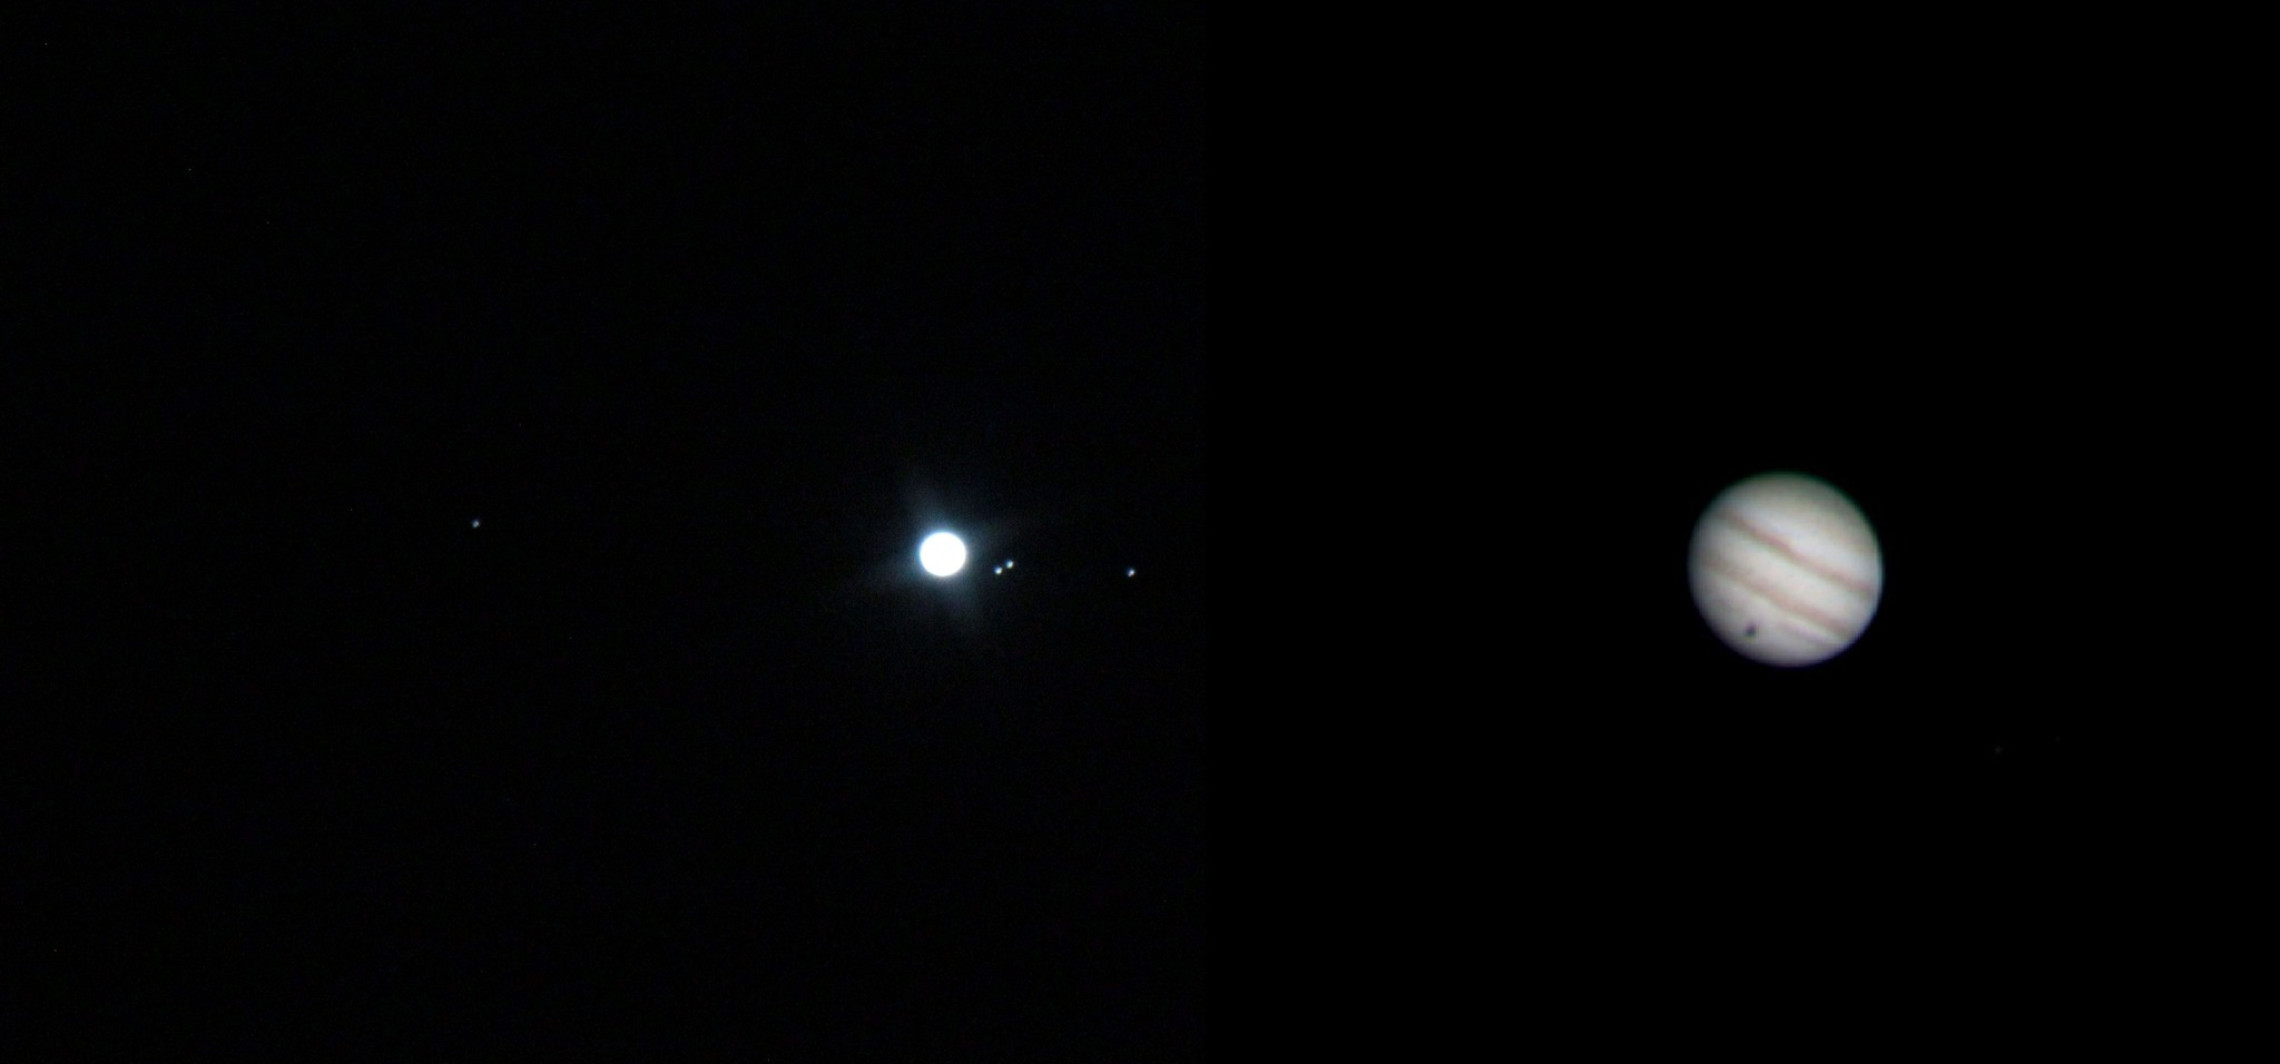 Inowrocław - Tak wygląda Jowisz obserwowany z inowrocławskiej astrobazy